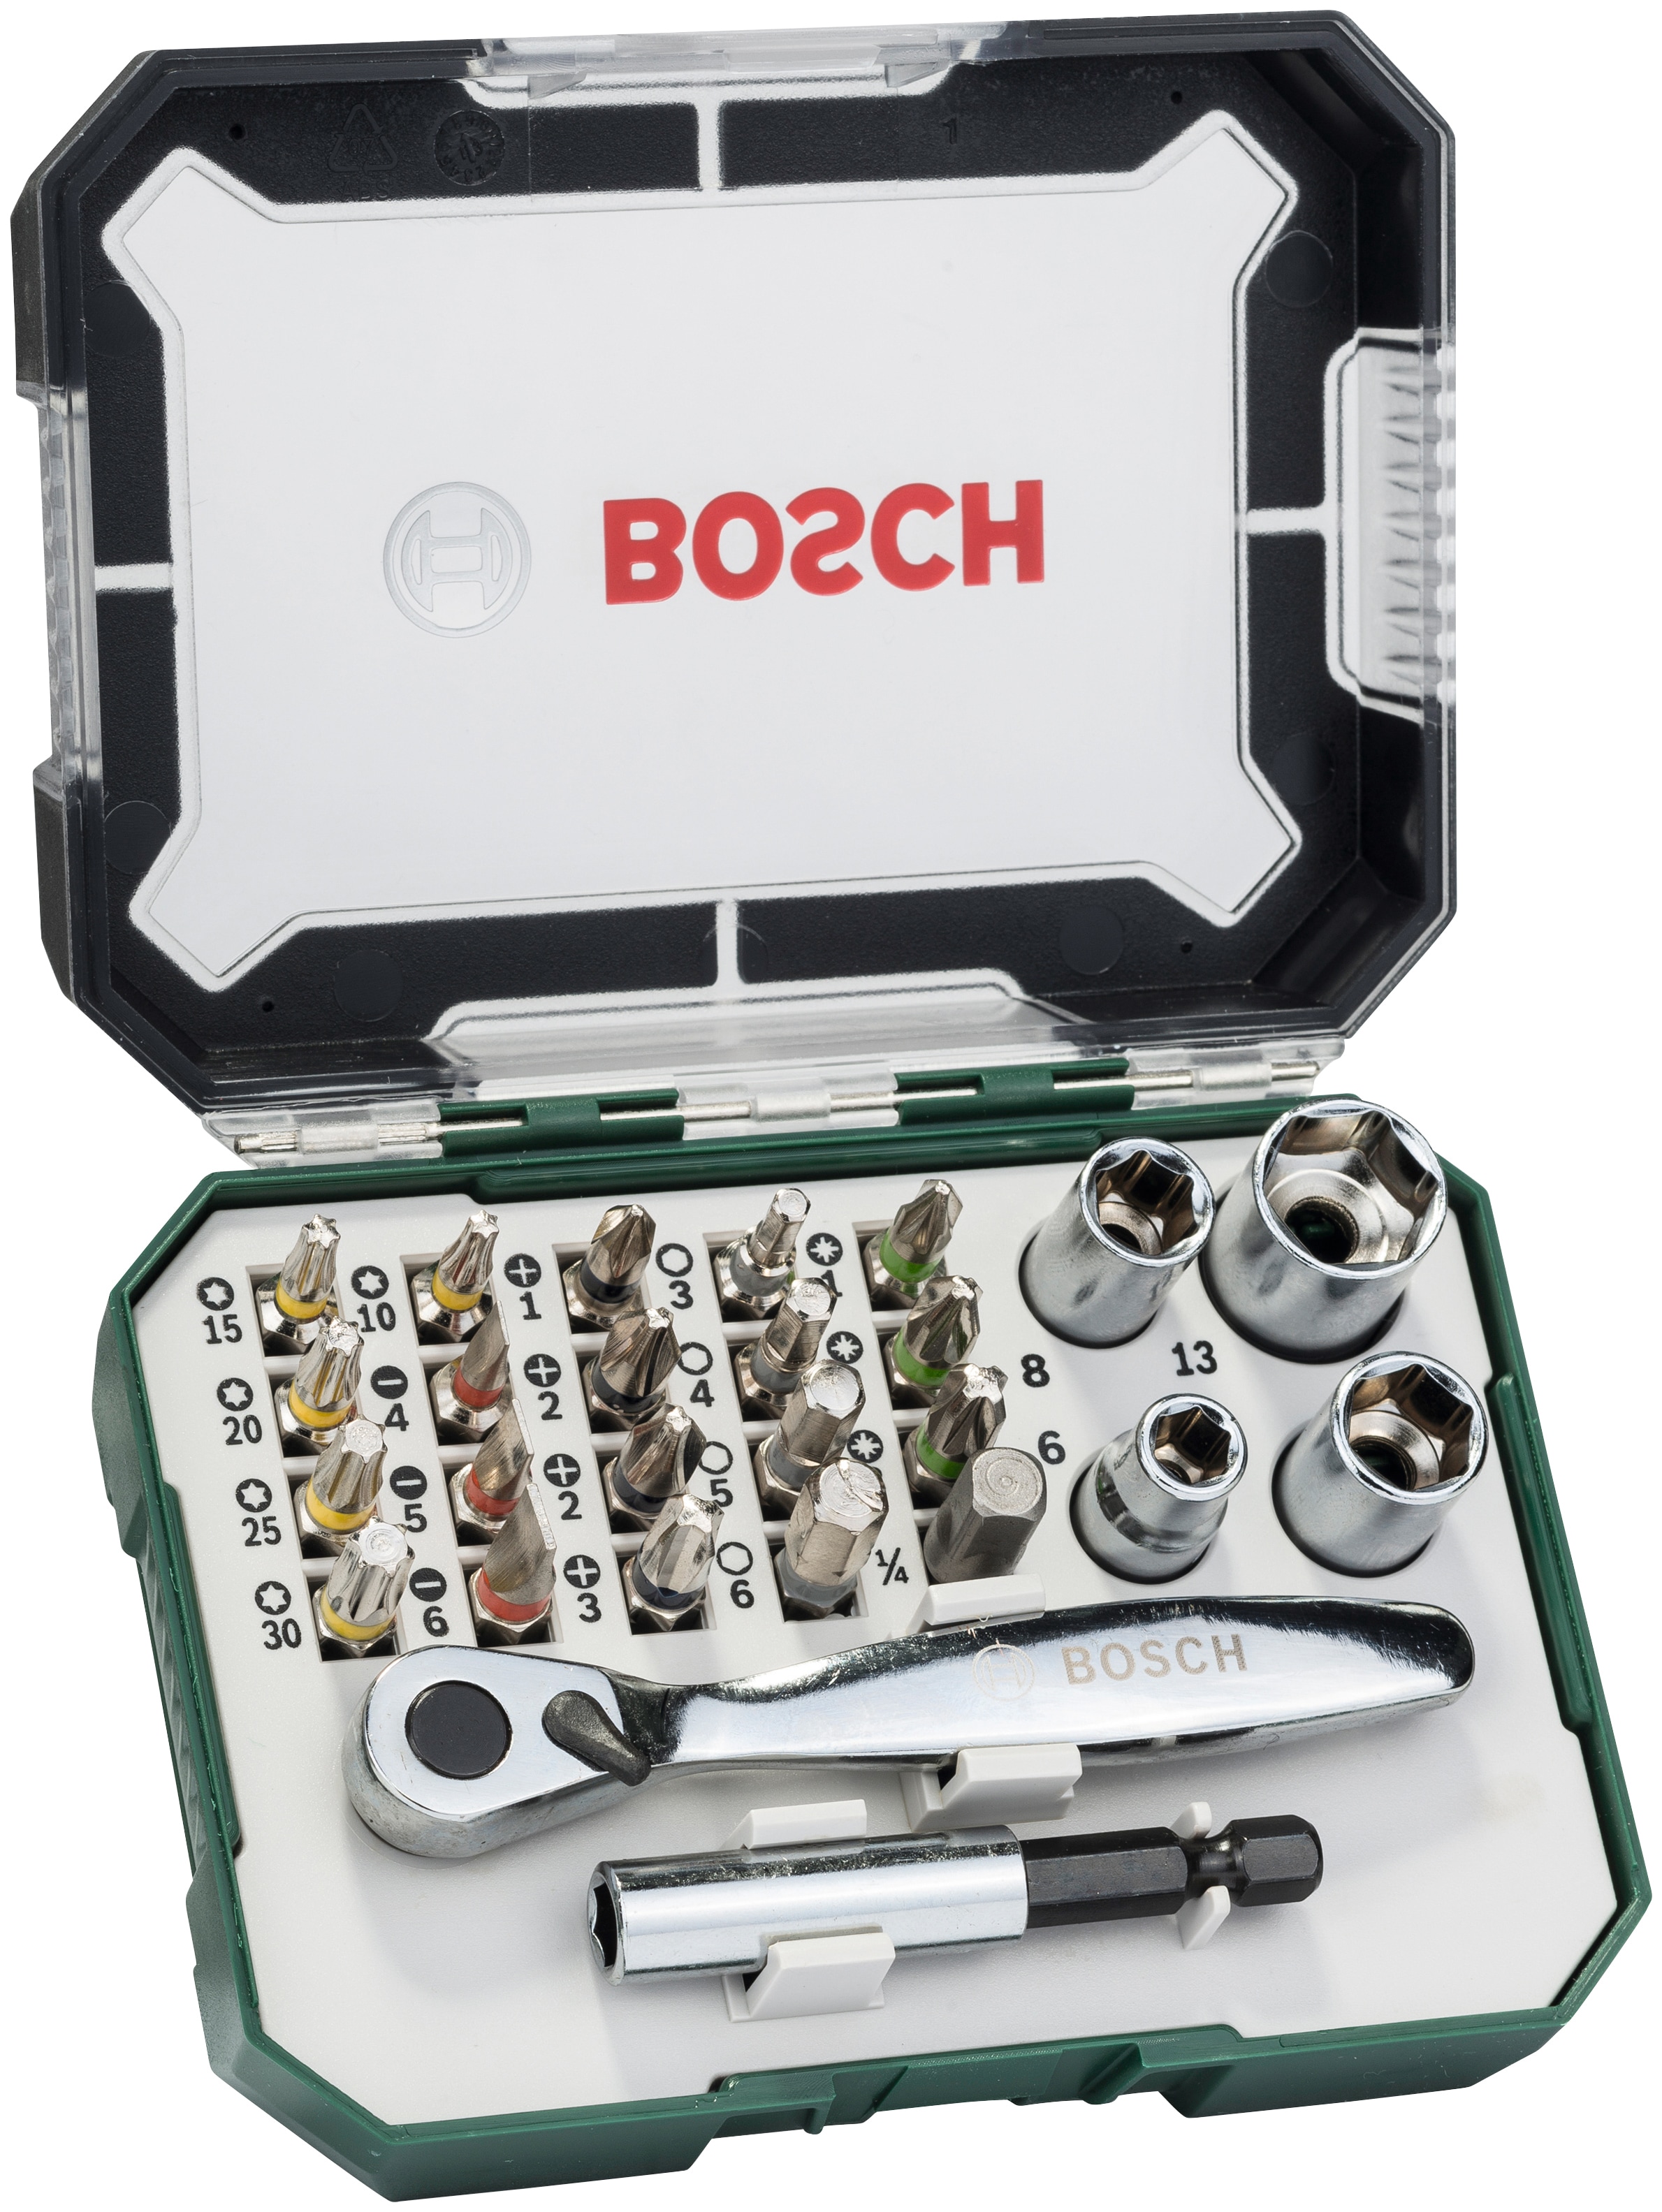 Bosch Home & Garden Bit-Set »double end«, 27-teilig, SDB-Set, Schrauberbit- Set, mit zusätzlicher Ratsche online kaufen